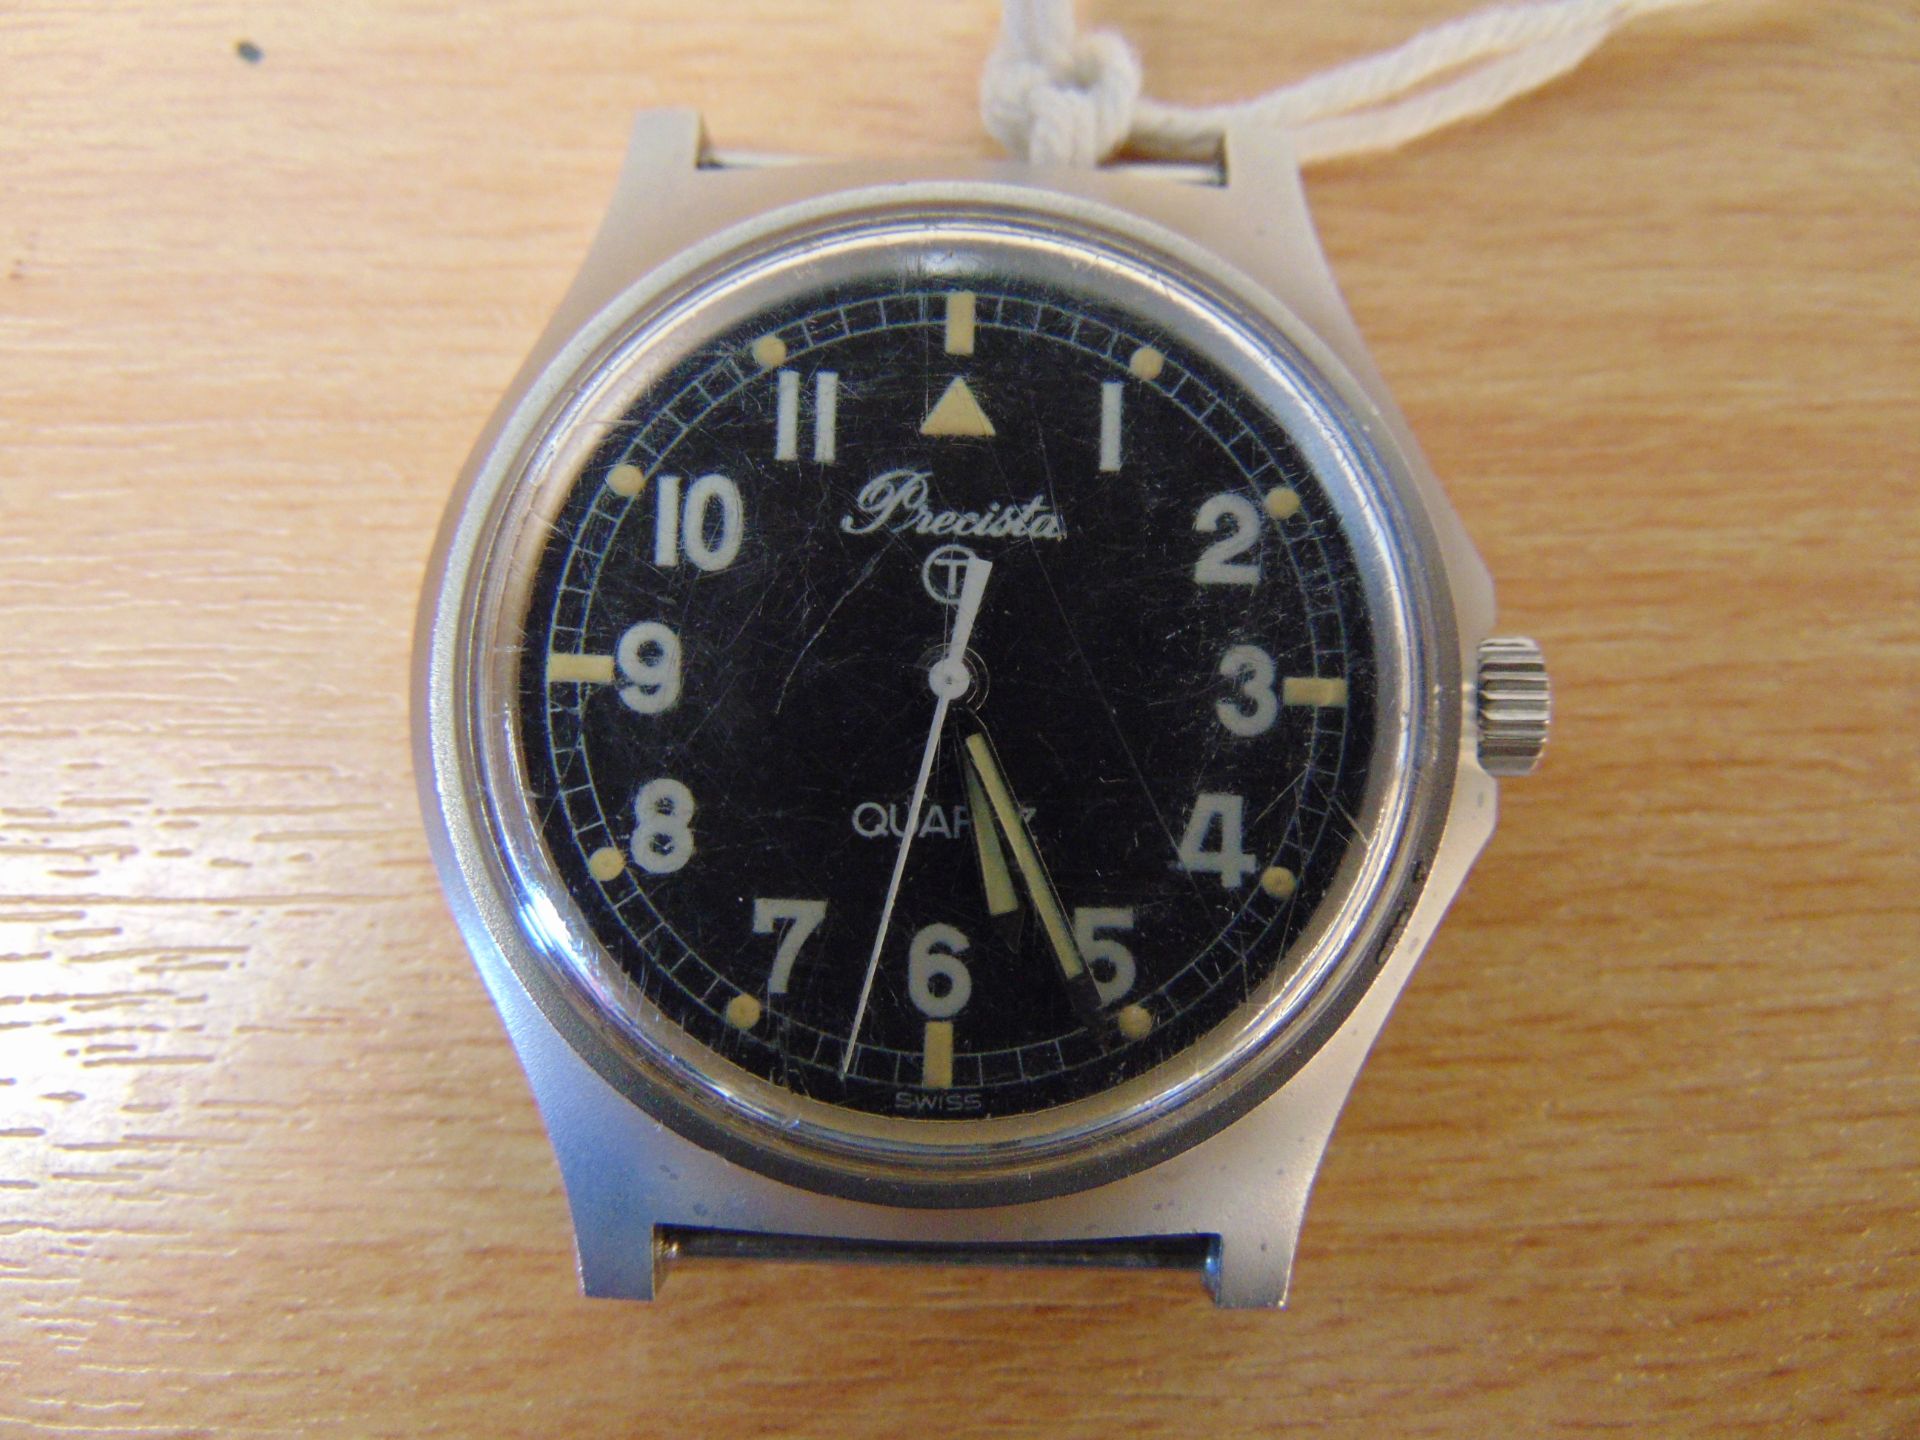 V Rare Precista 688 / Service Watch Nato Marks Date 1984 - Image 2 of 4